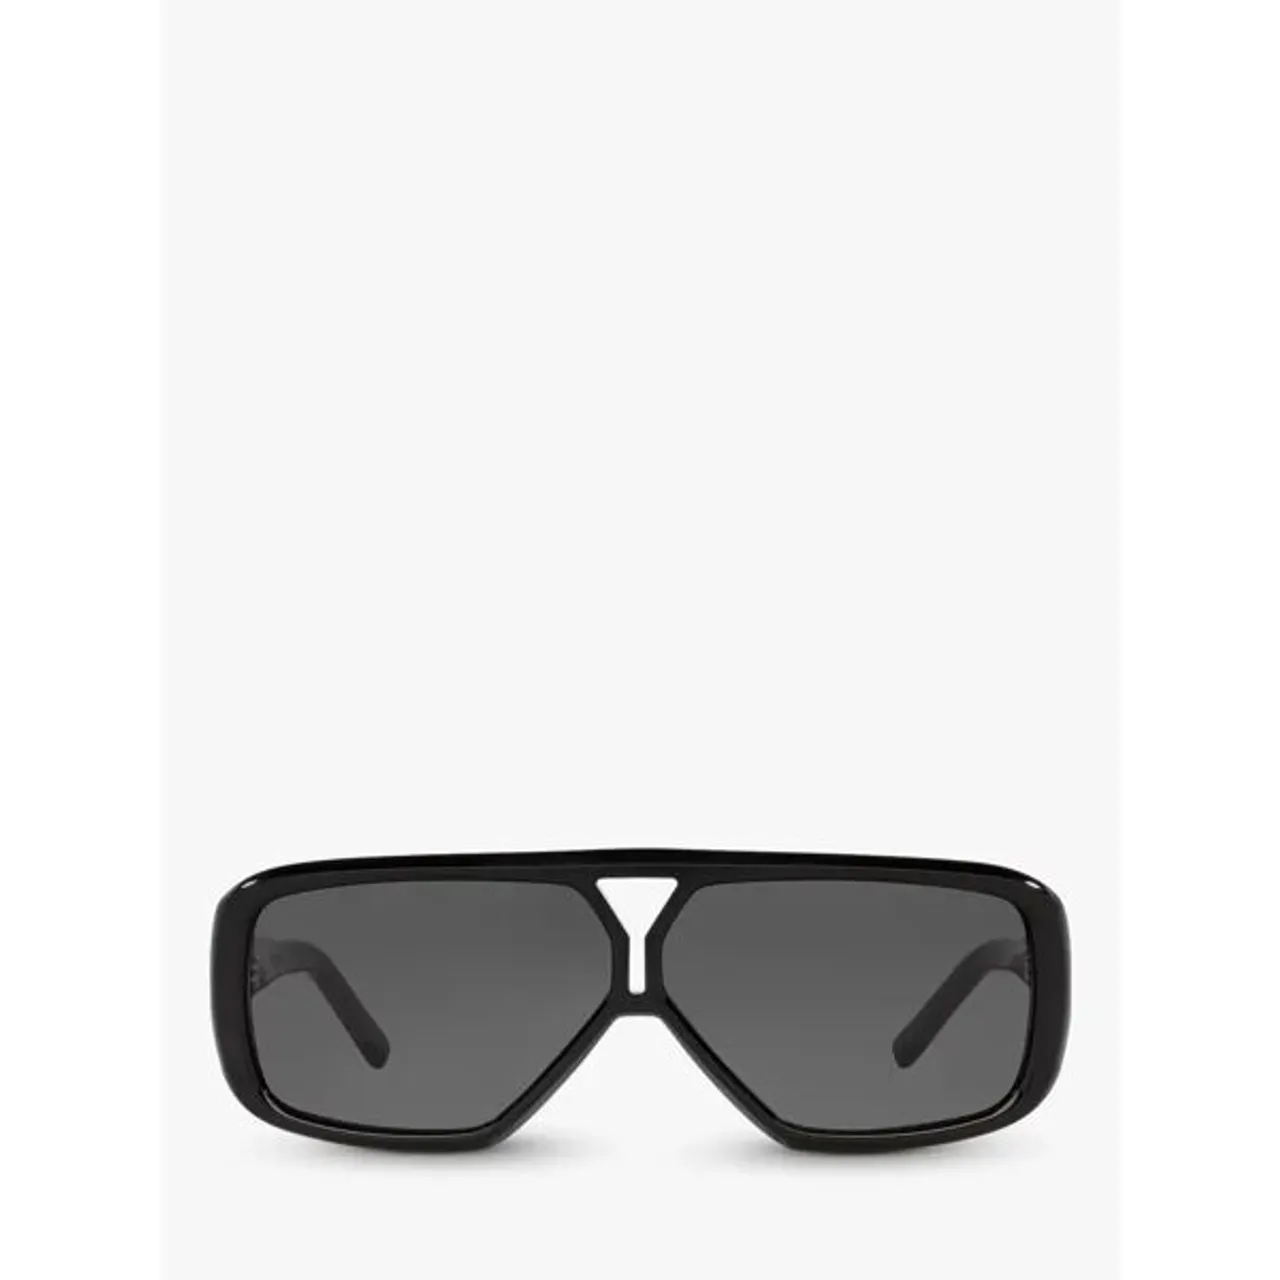 Yves Saint Laurent YS000434 Women's Rectangular Sunglasses, Black - Black - Female